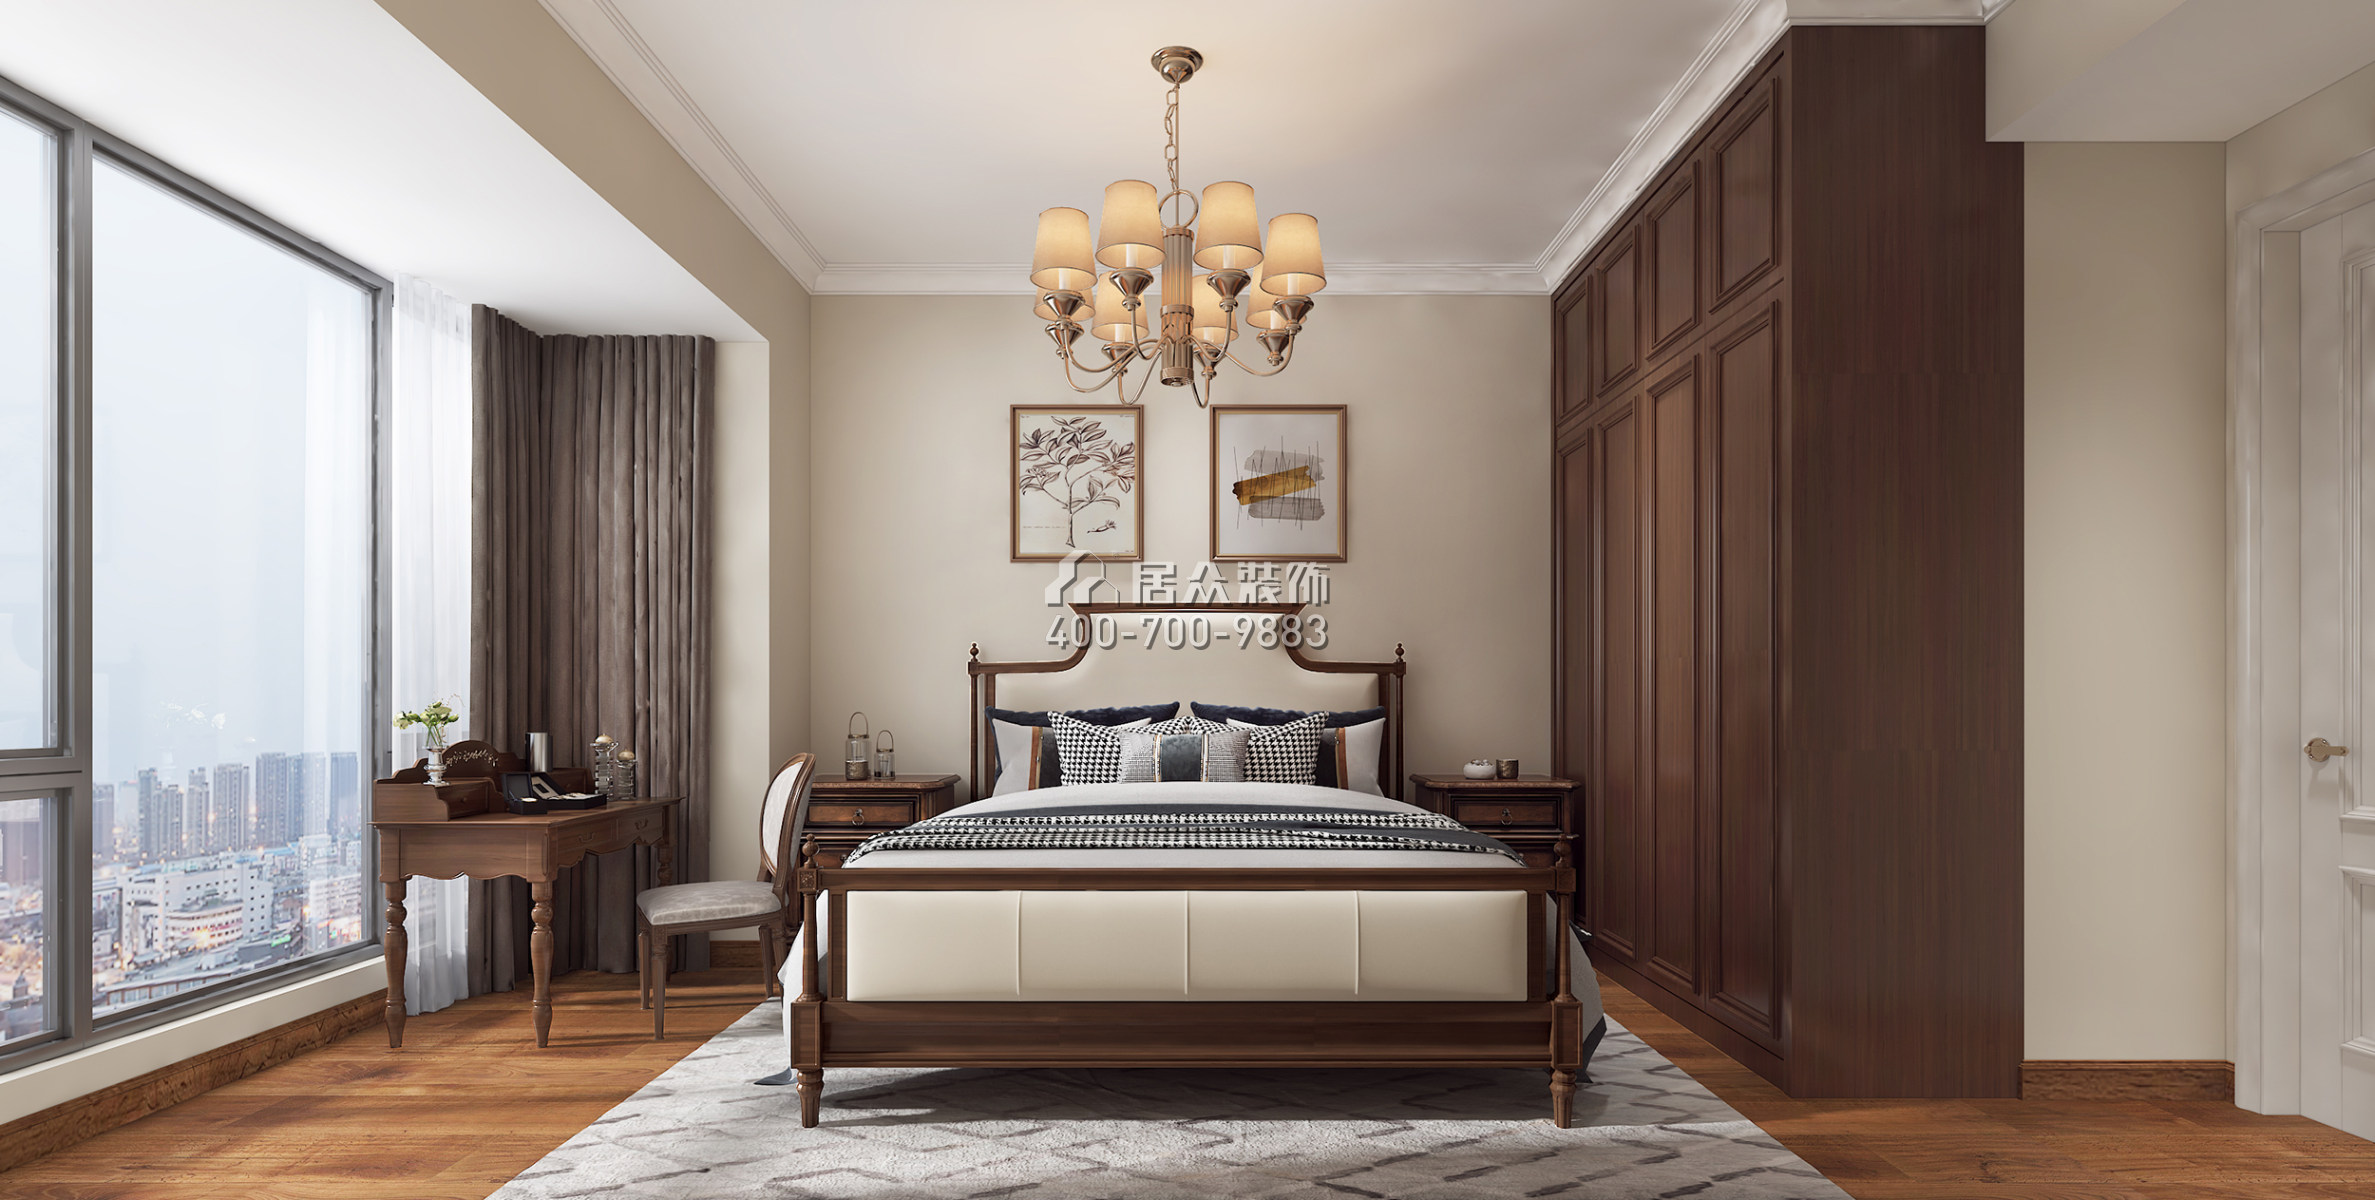 半岛城邦一期85平方米美式风格平层户型卧室装修效果图